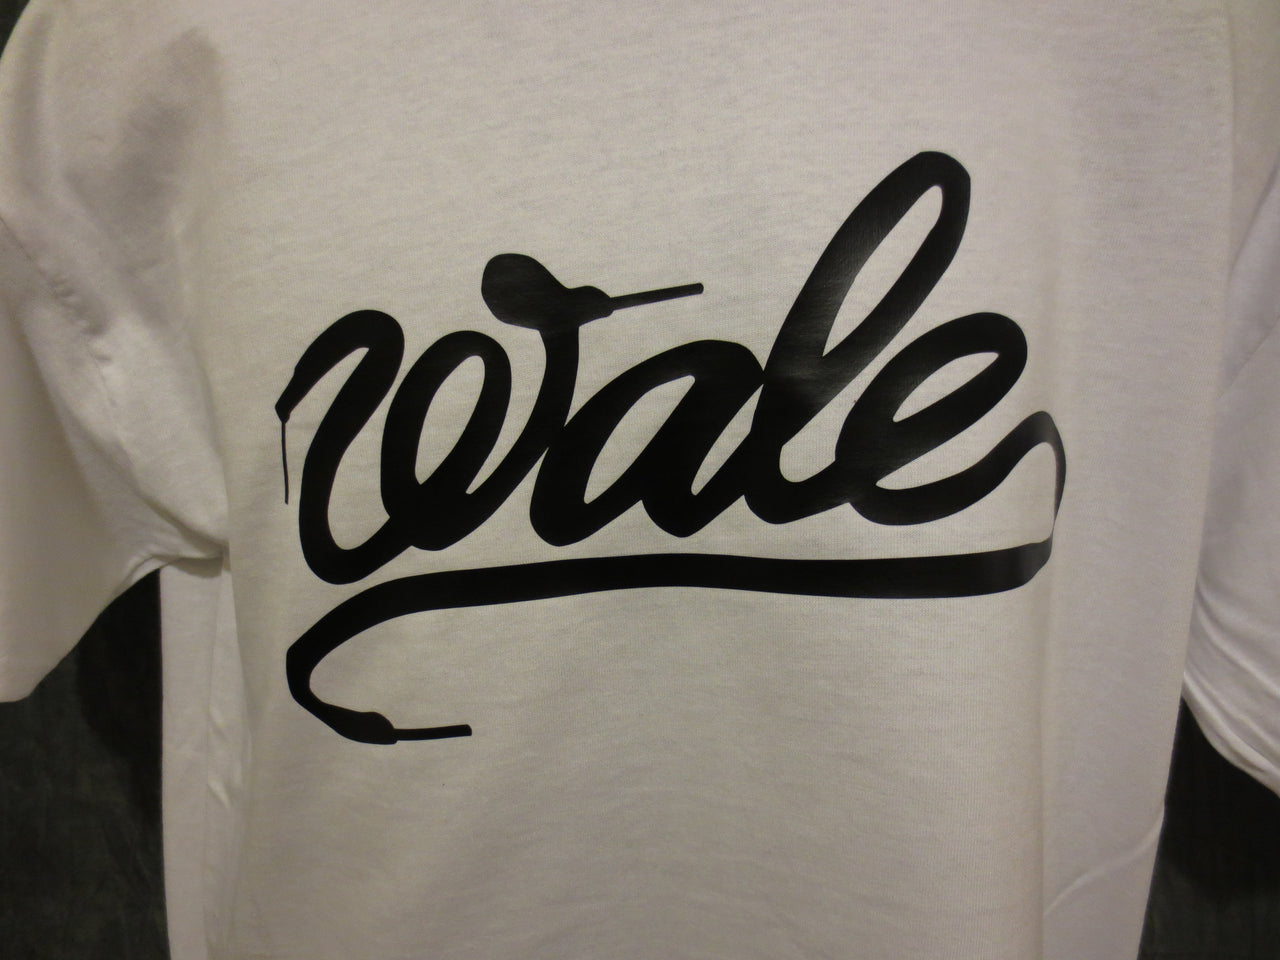 Wale 'Shoelace' Tshirt - TshirtNow.net - 12